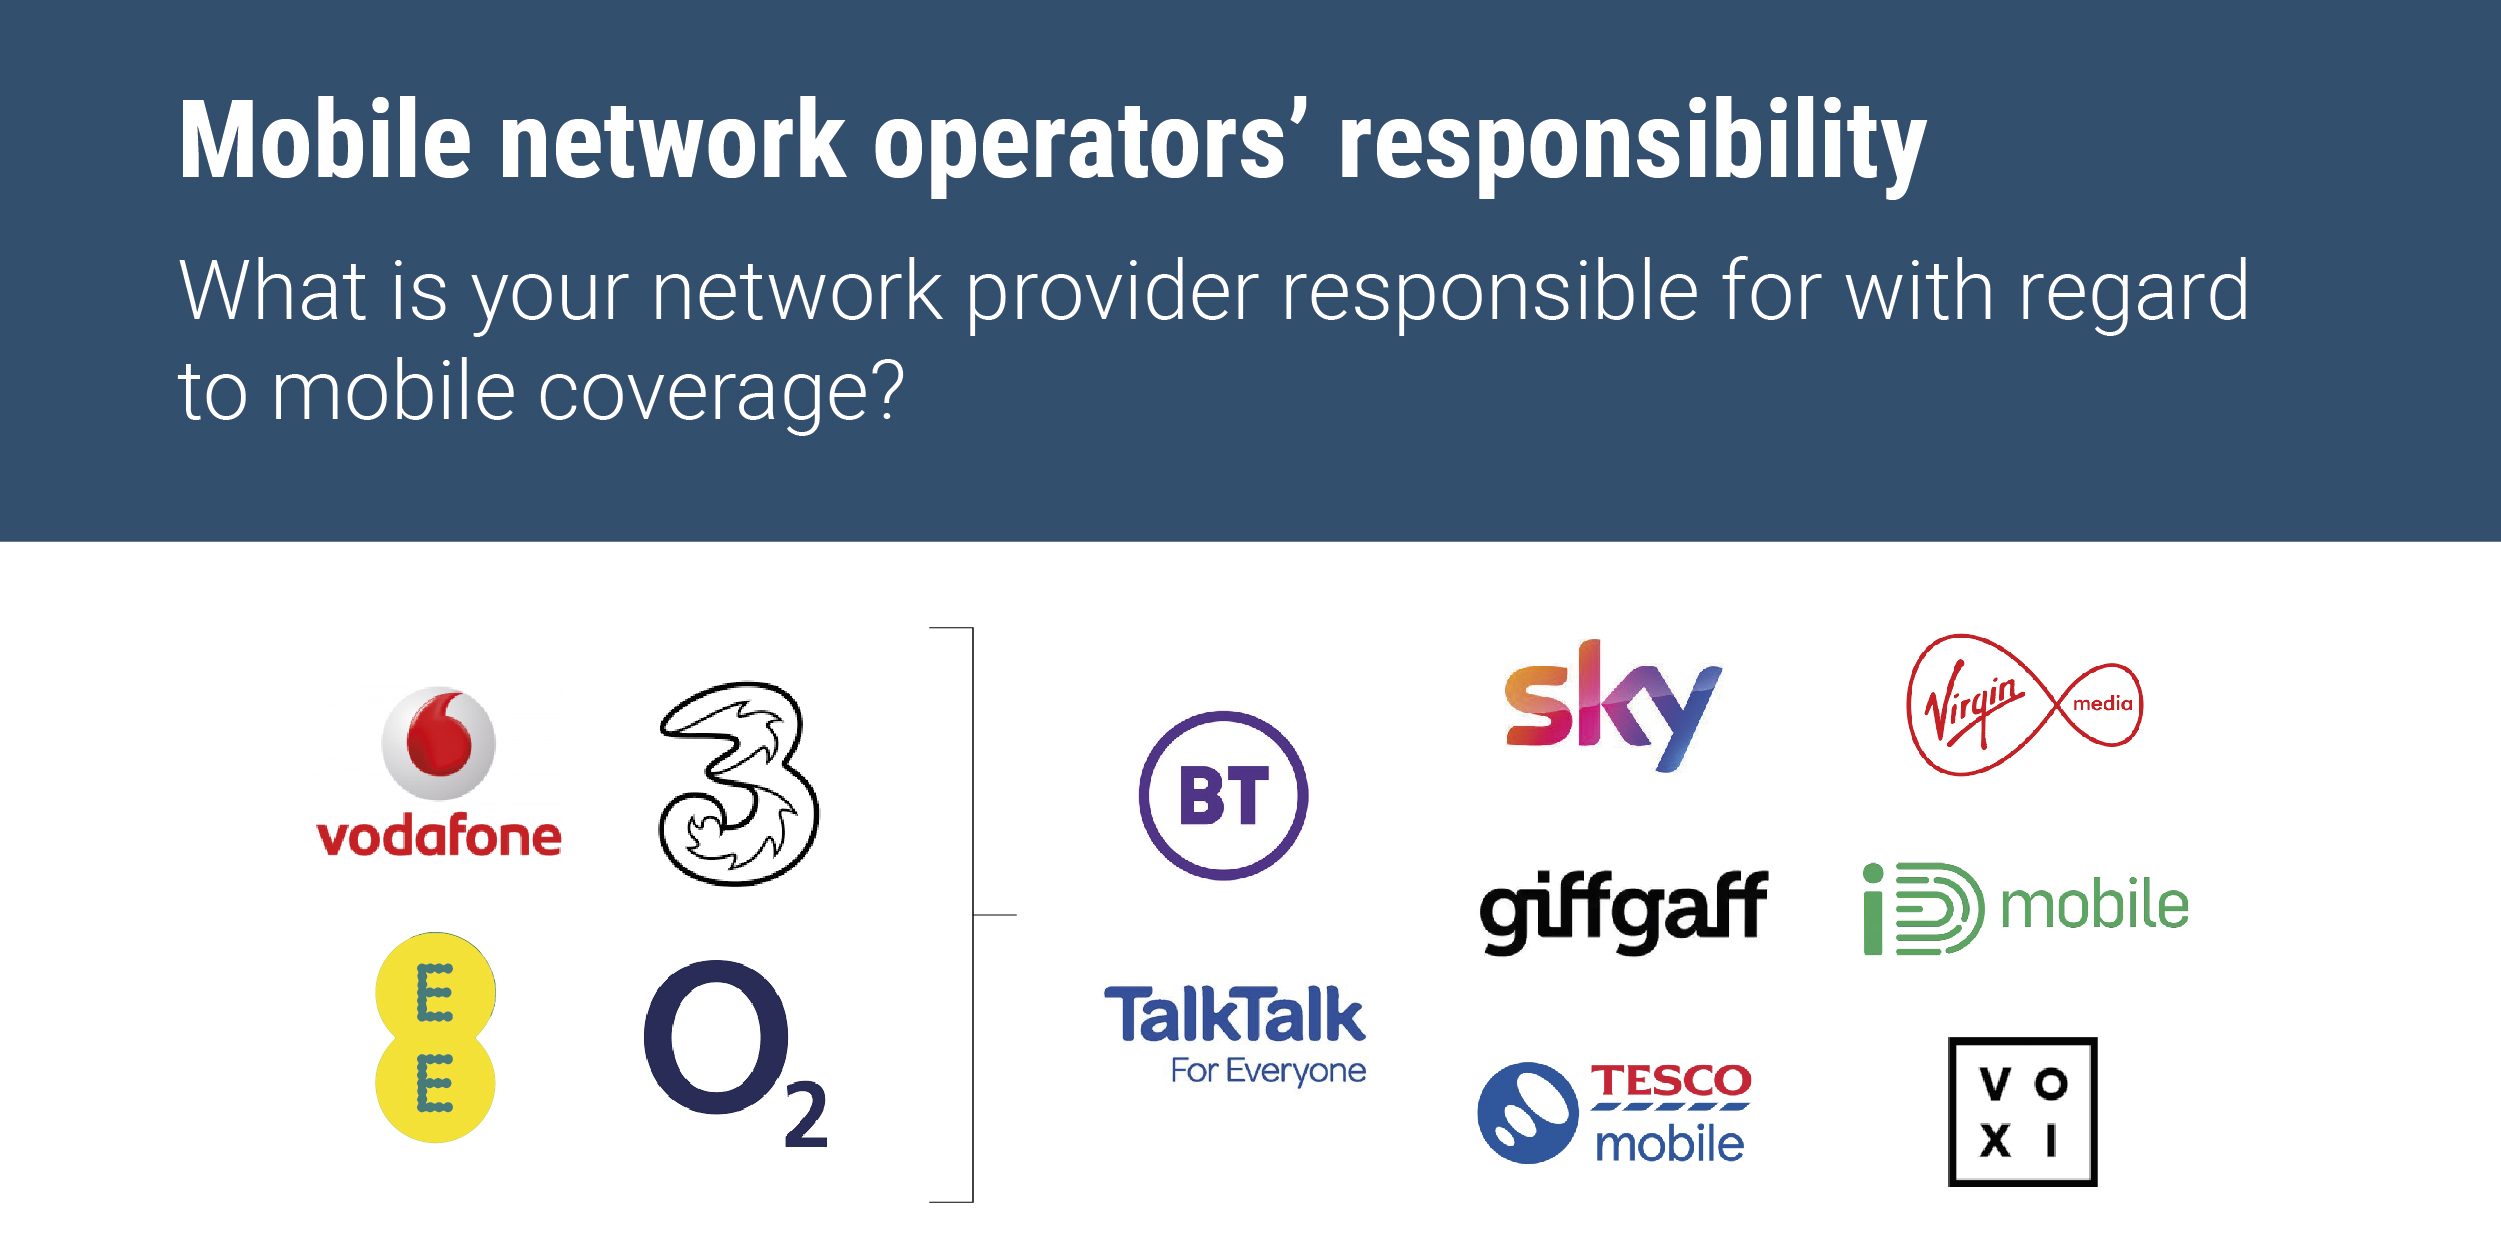 Mobile network operators graphic